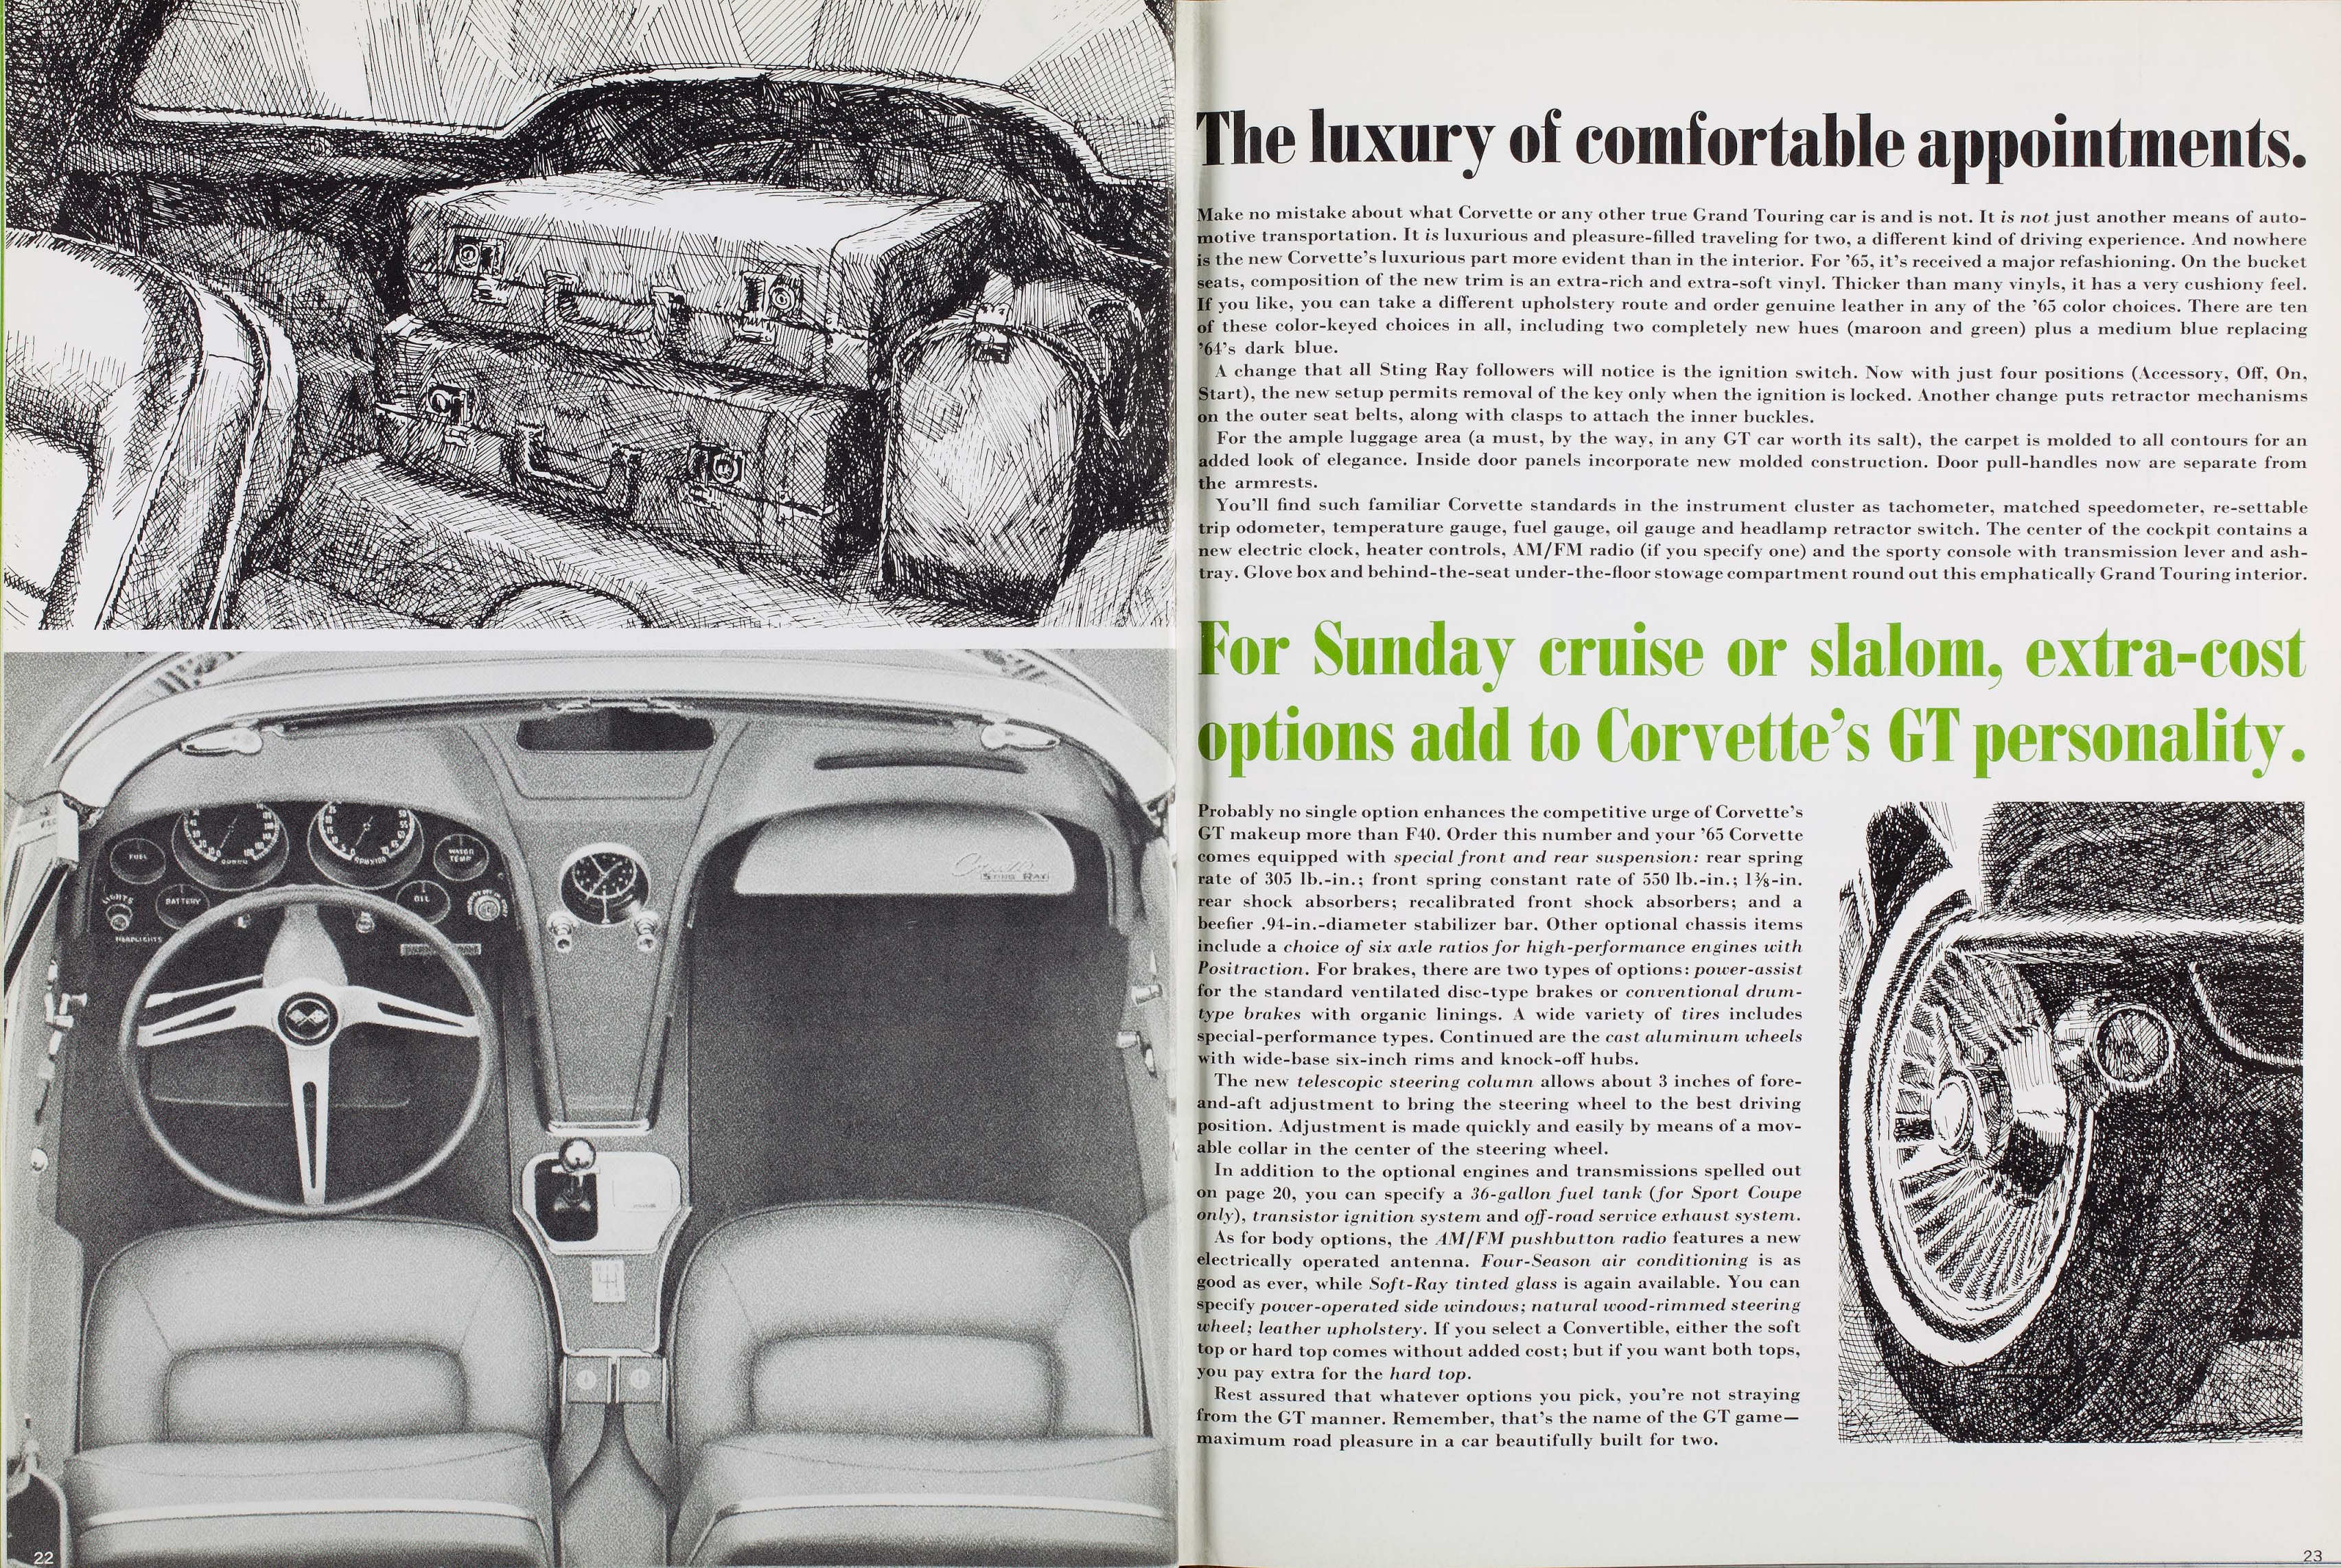 1965_Corvette_News_V8-1-22-23